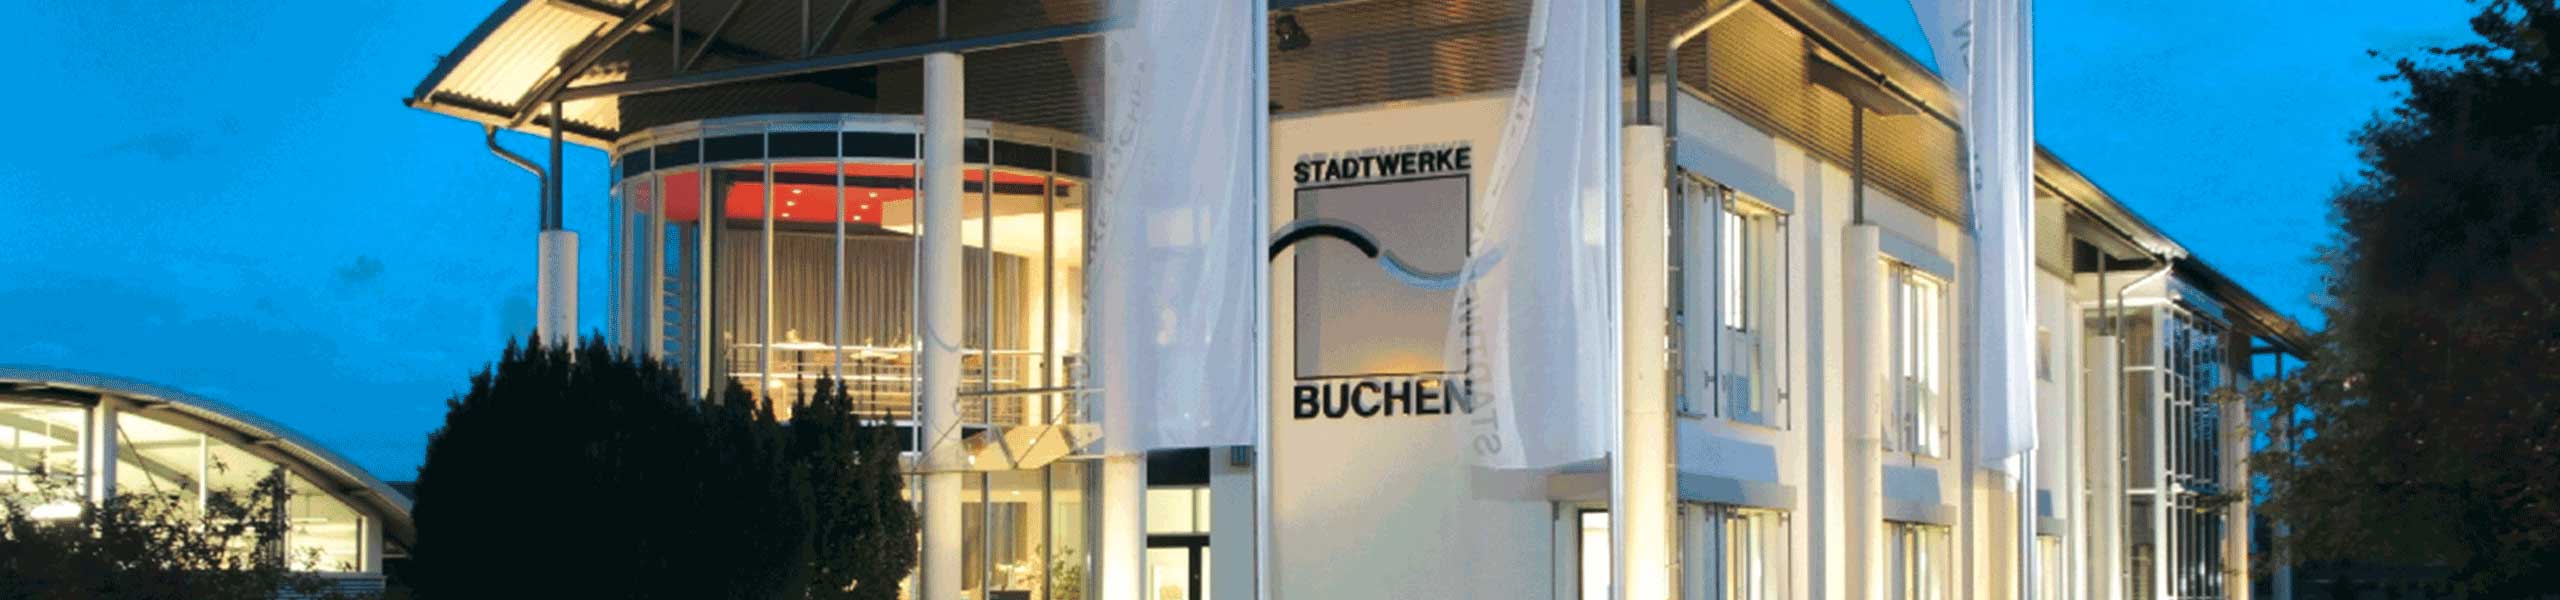 Stadtwerke Buchen GmbH & Co KG - Hinweise zu Ihrer Jahresrechnung